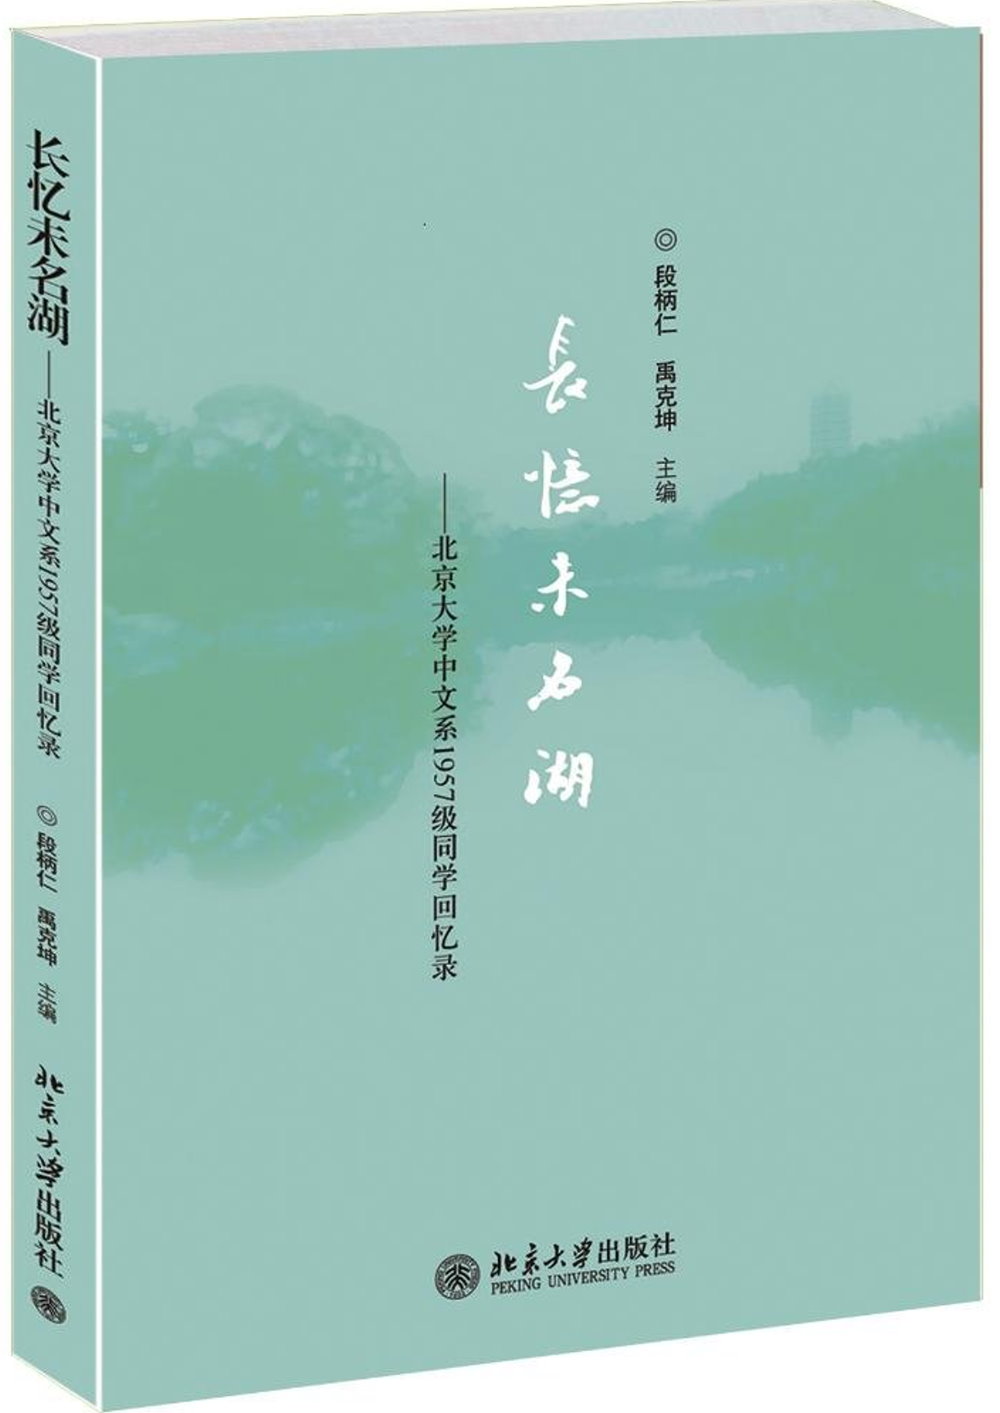 長憶未名湖:北京大學中文系1957級同學回憶錄